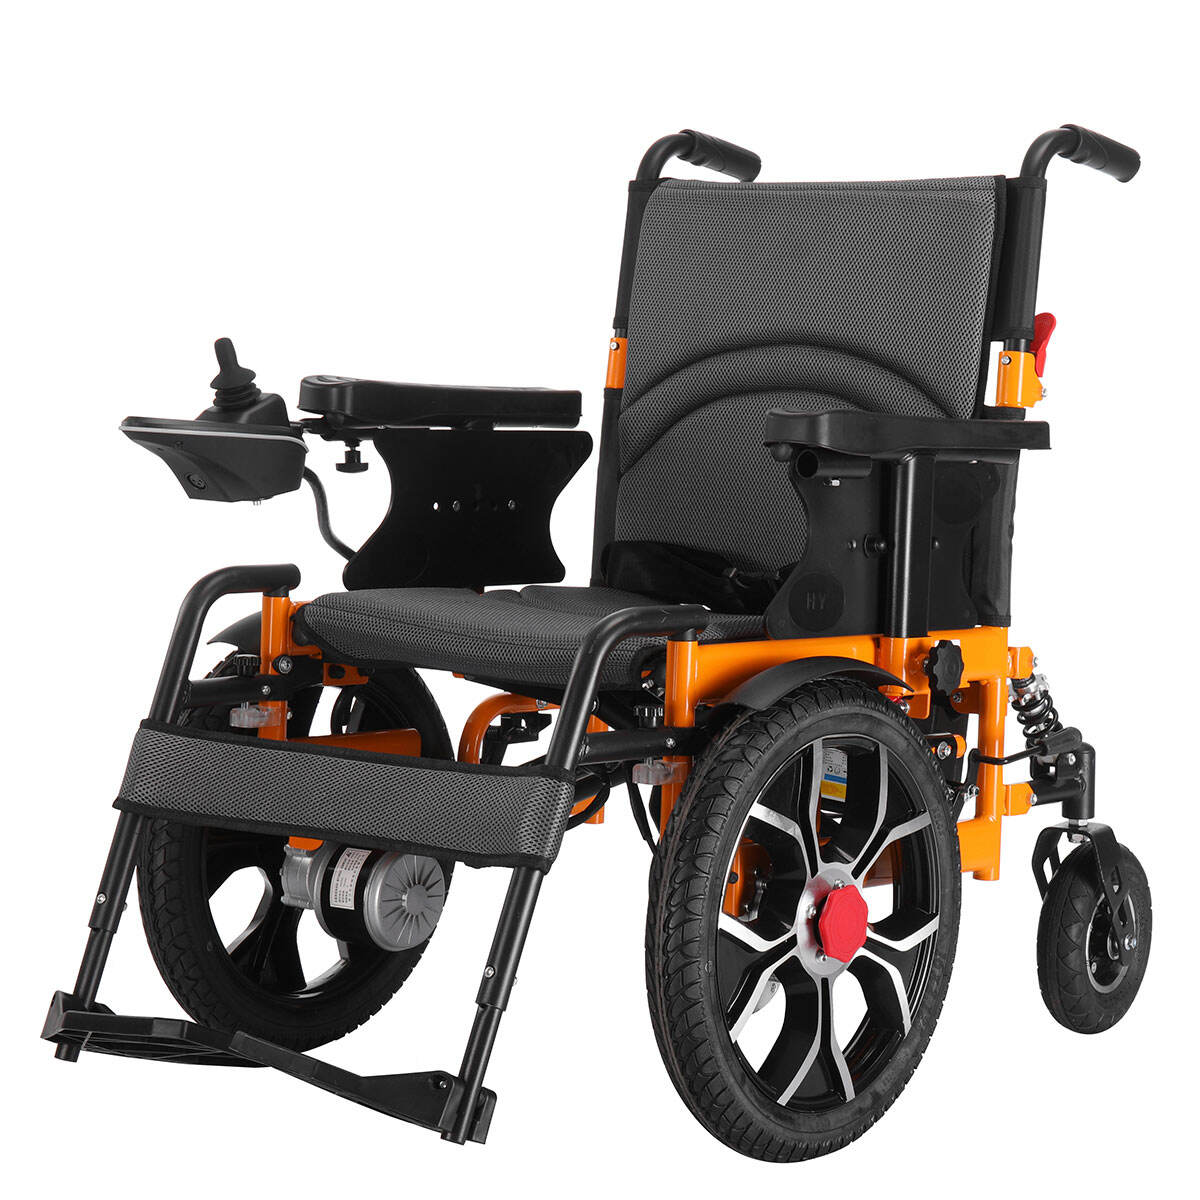 BC-ES600202 CE odobren električni invalidski voziček za invalide